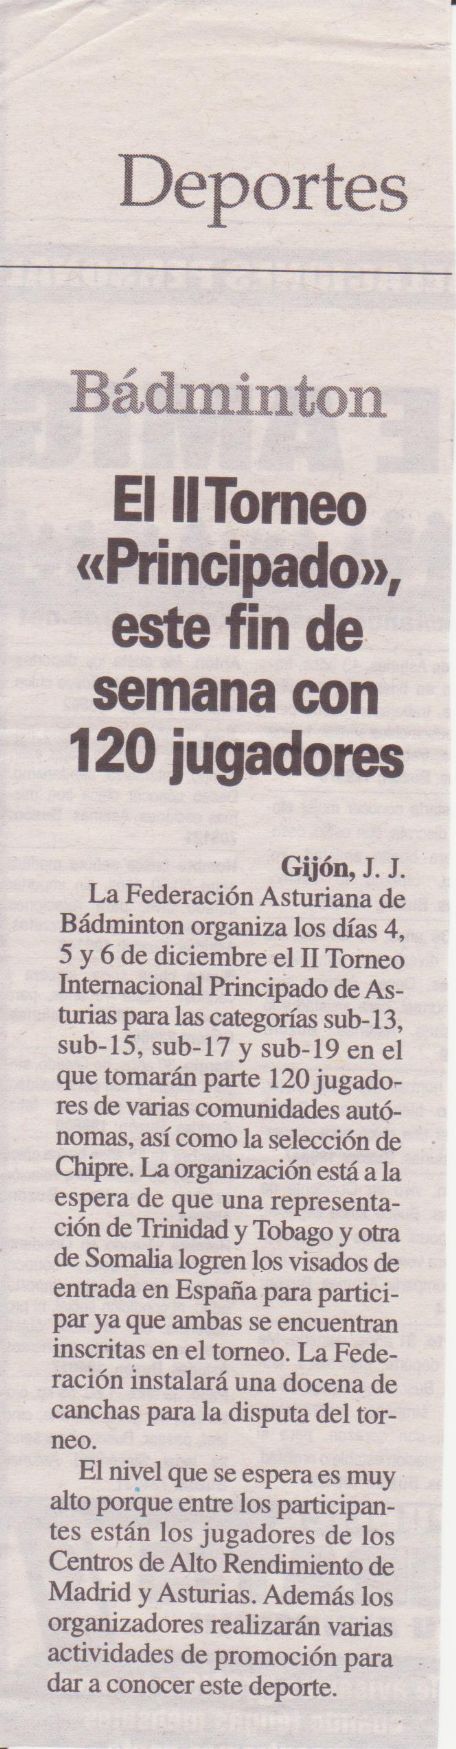 Nota Prensa Int. Aviles 2011 (2)